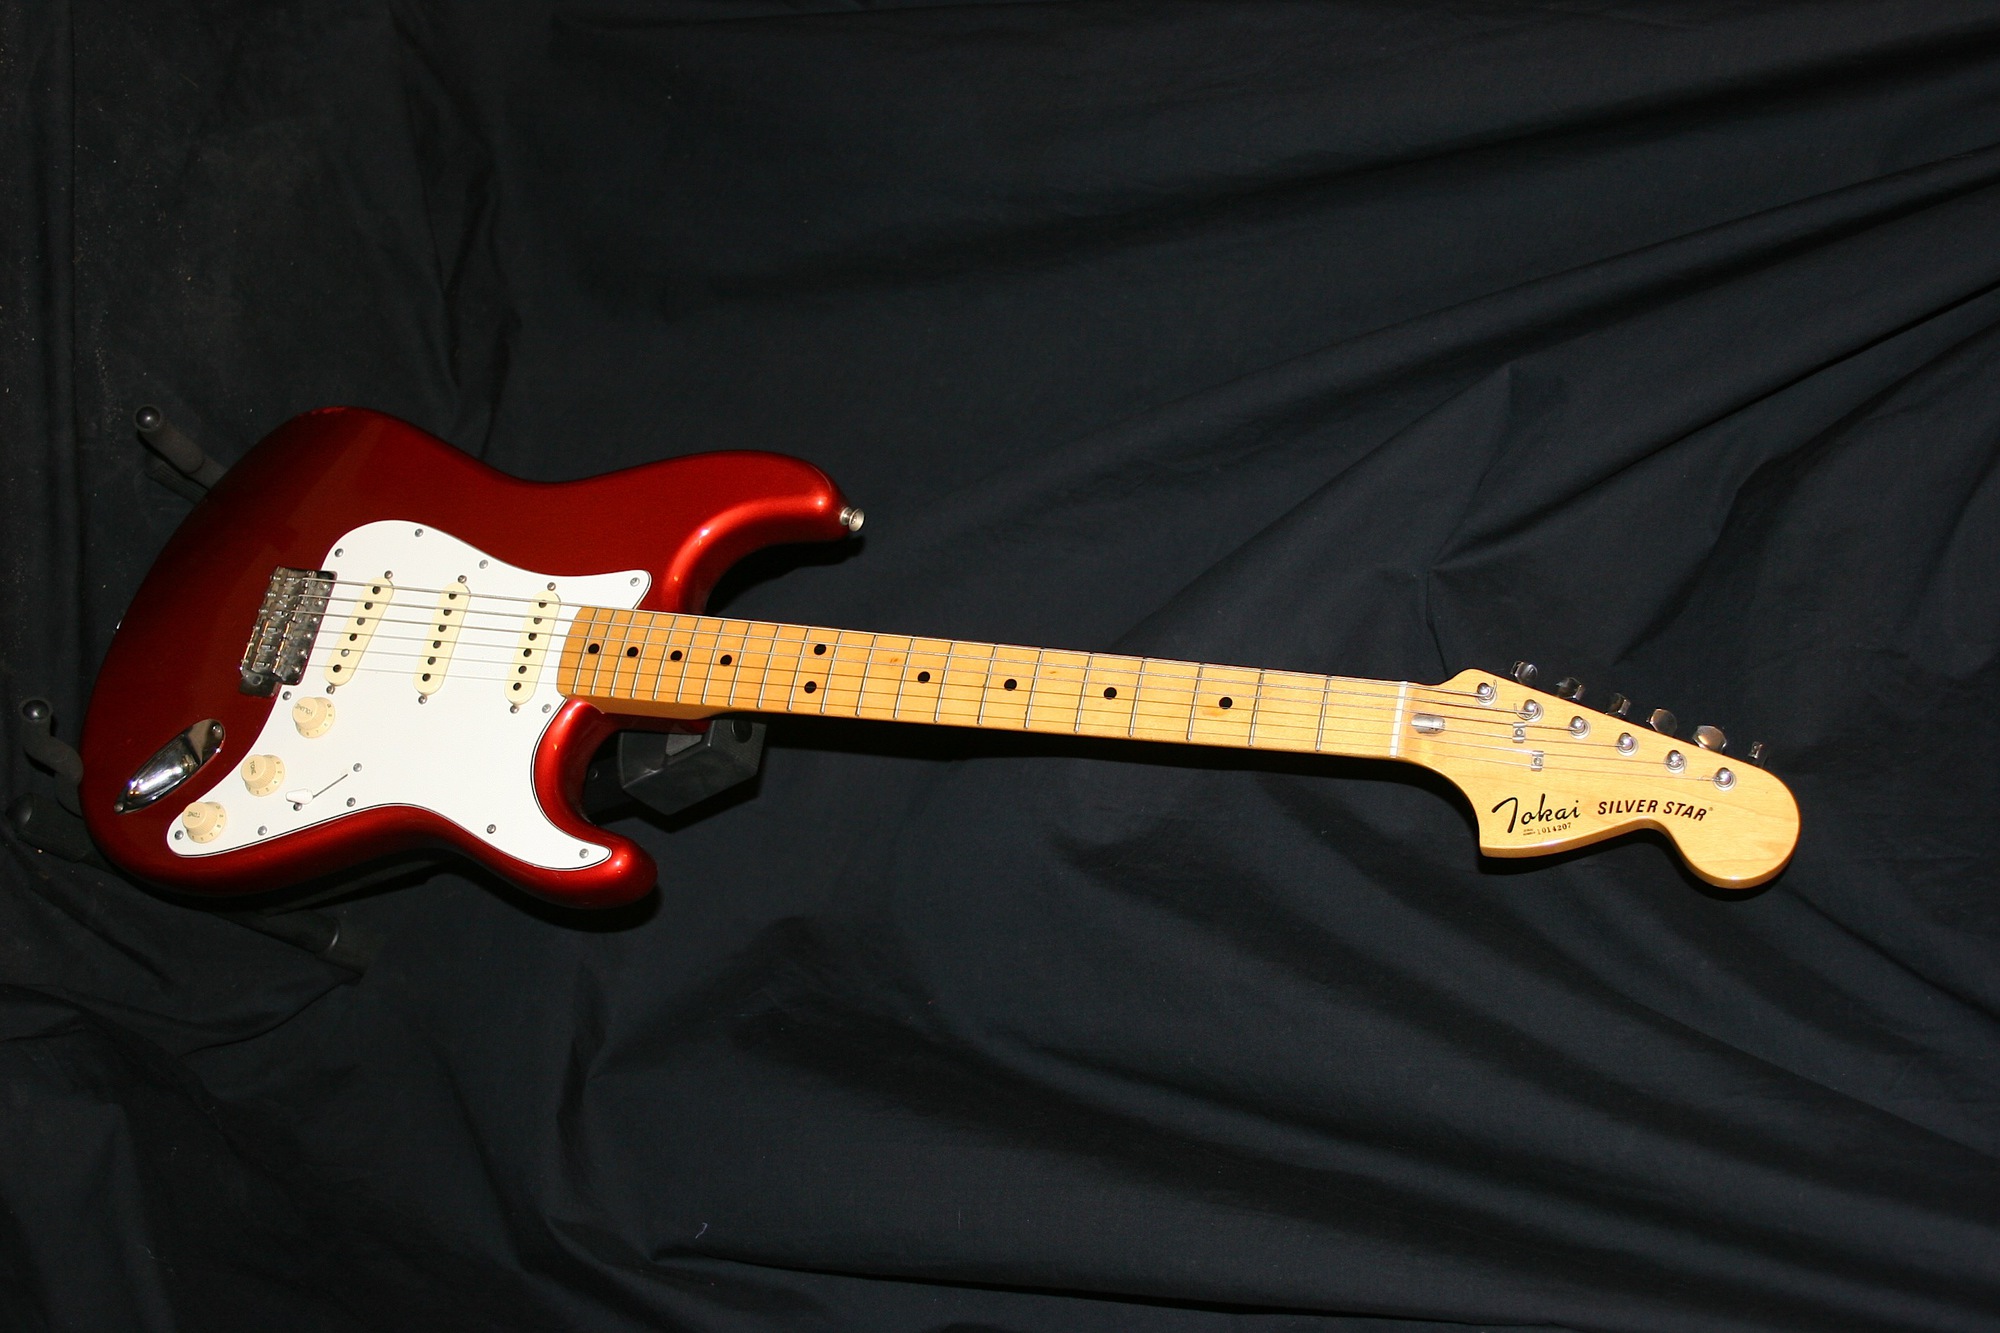 1979 Tokai Silver Star Stratocaster**SOLD - Amp Guitars, Macclesfield